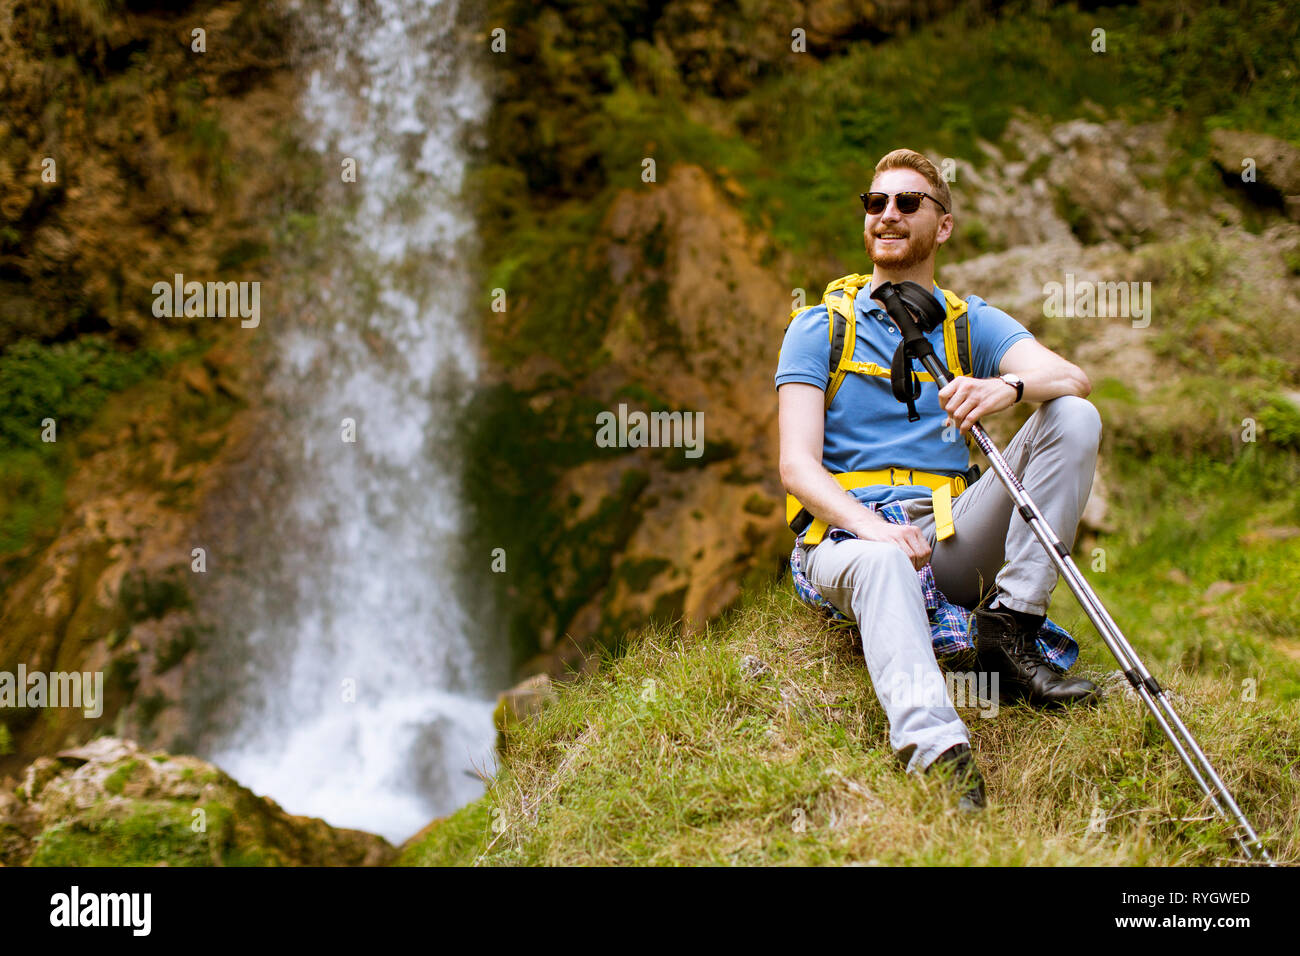 Bel giovane capelli rossi escursionista fermato accanto a una cascata di montagna a riposo Foto Stock